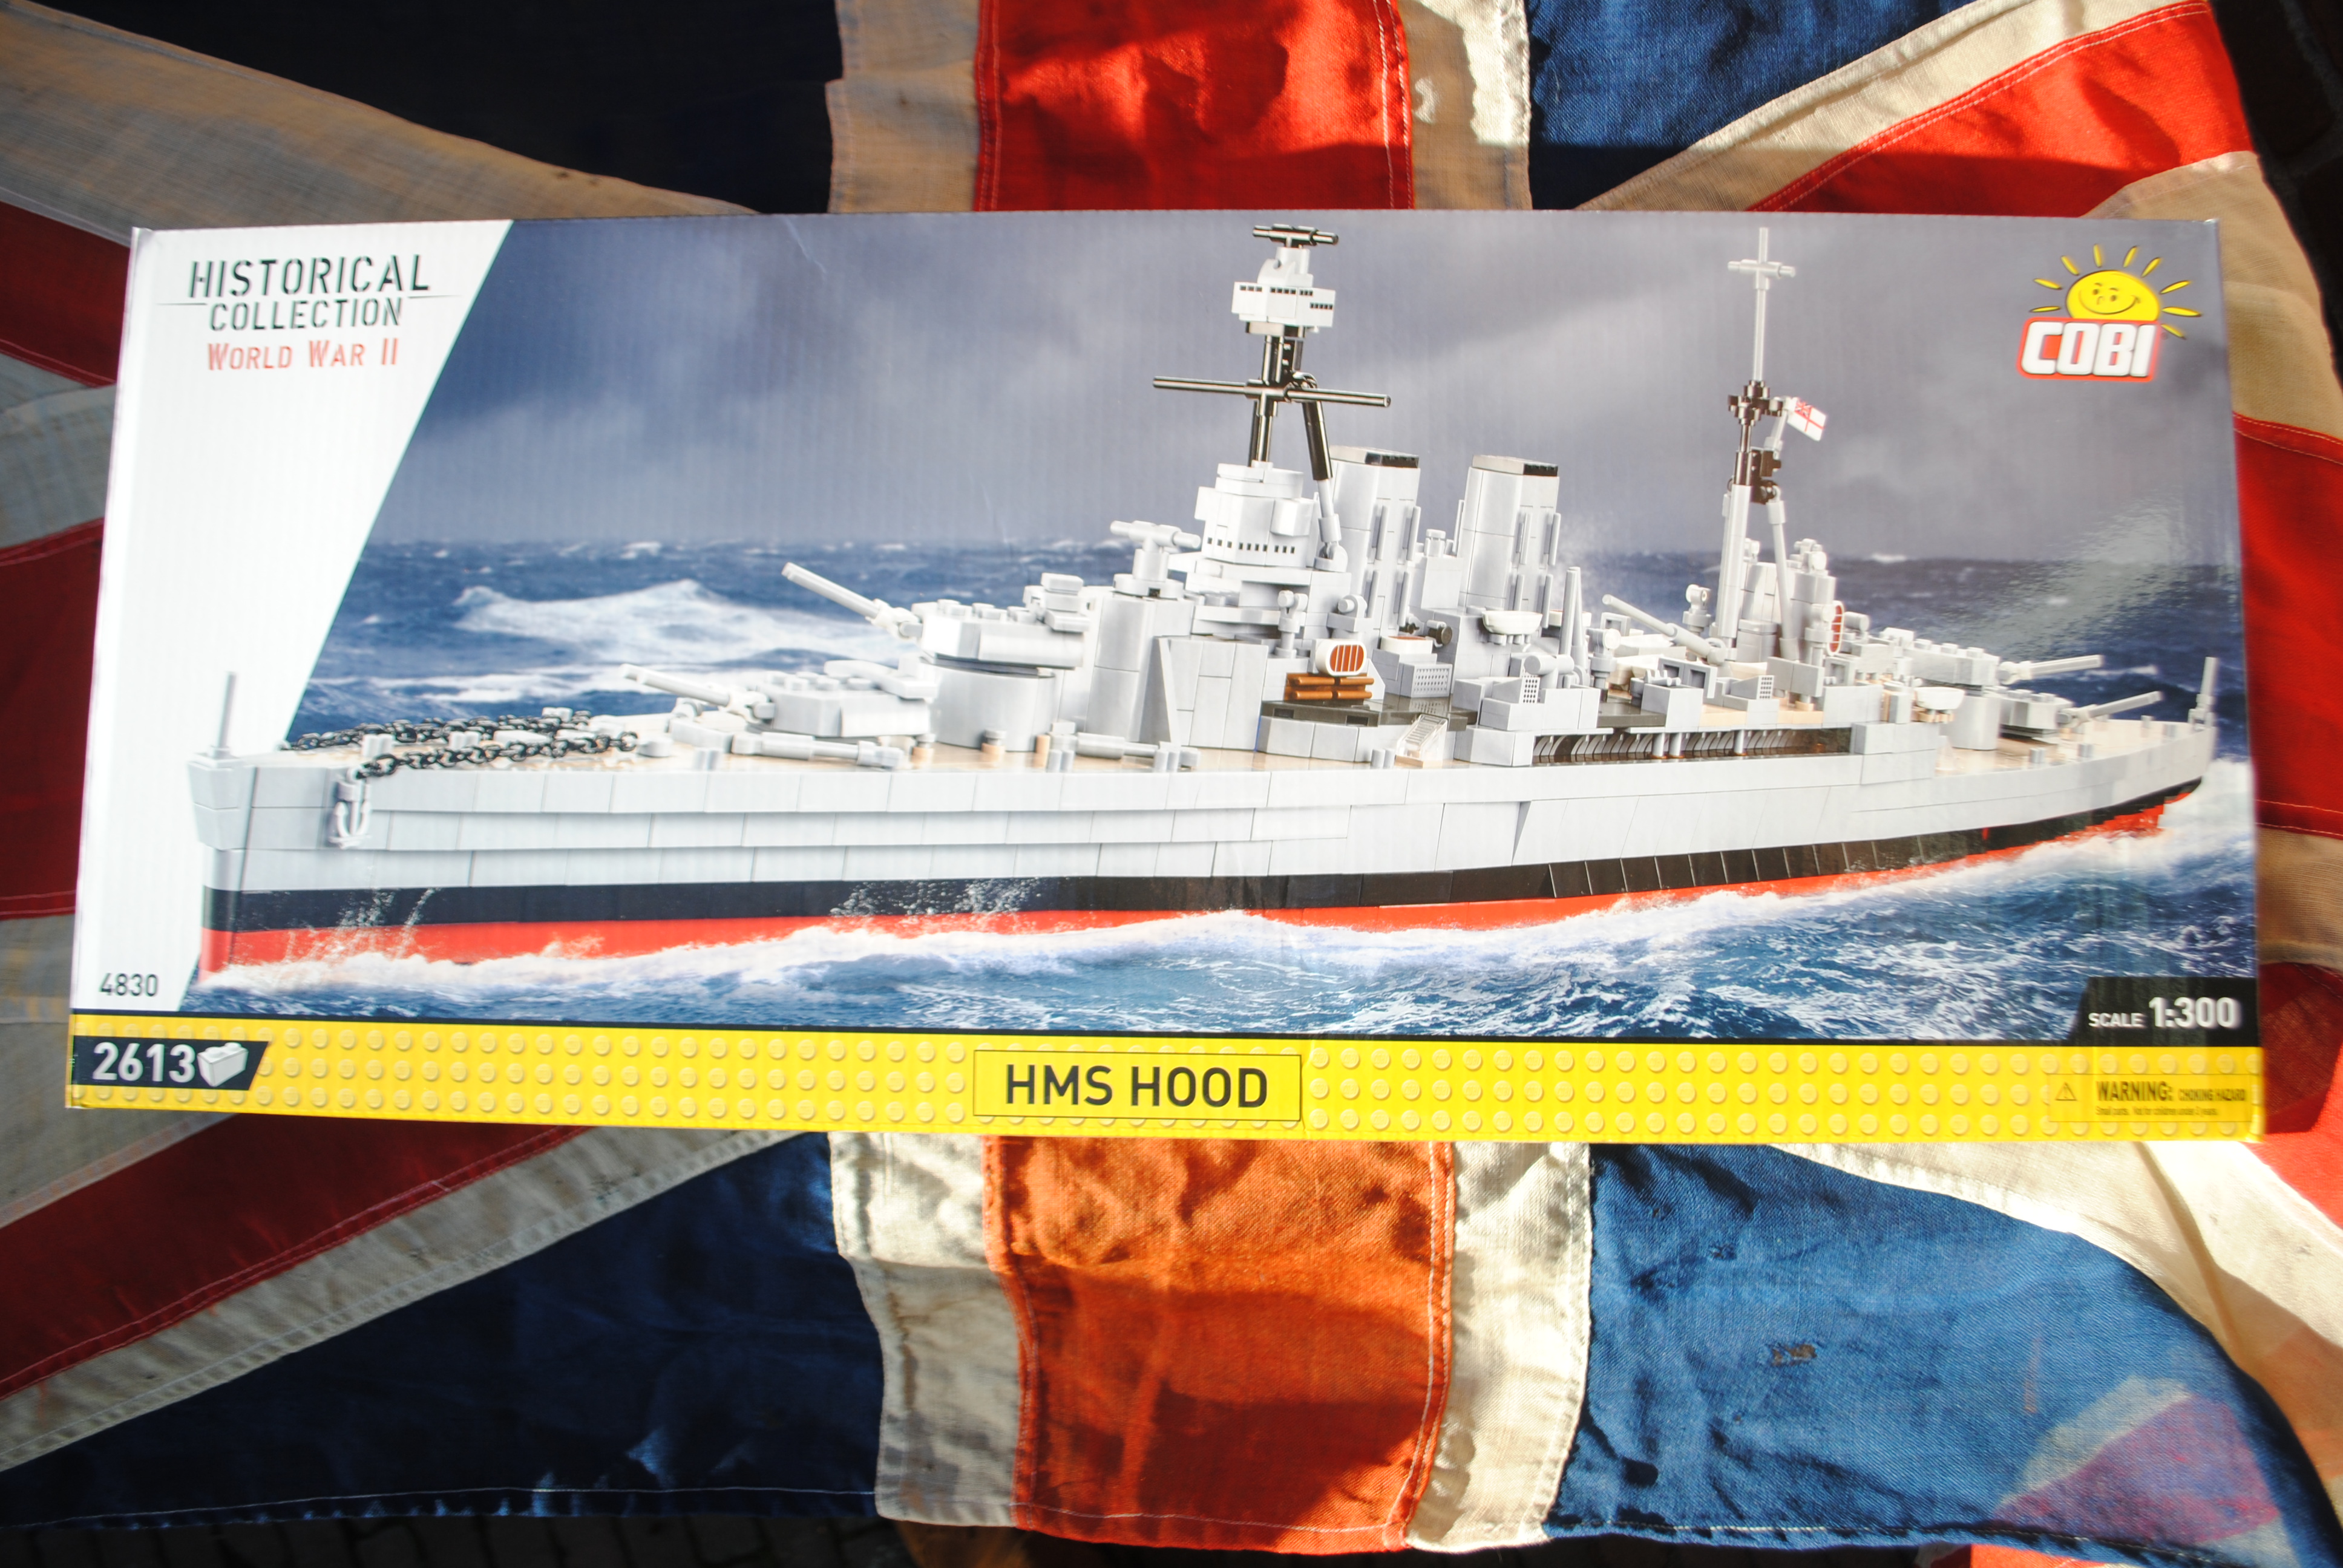 COBI 4830 HMS HOOD Royal Navy Battleschip